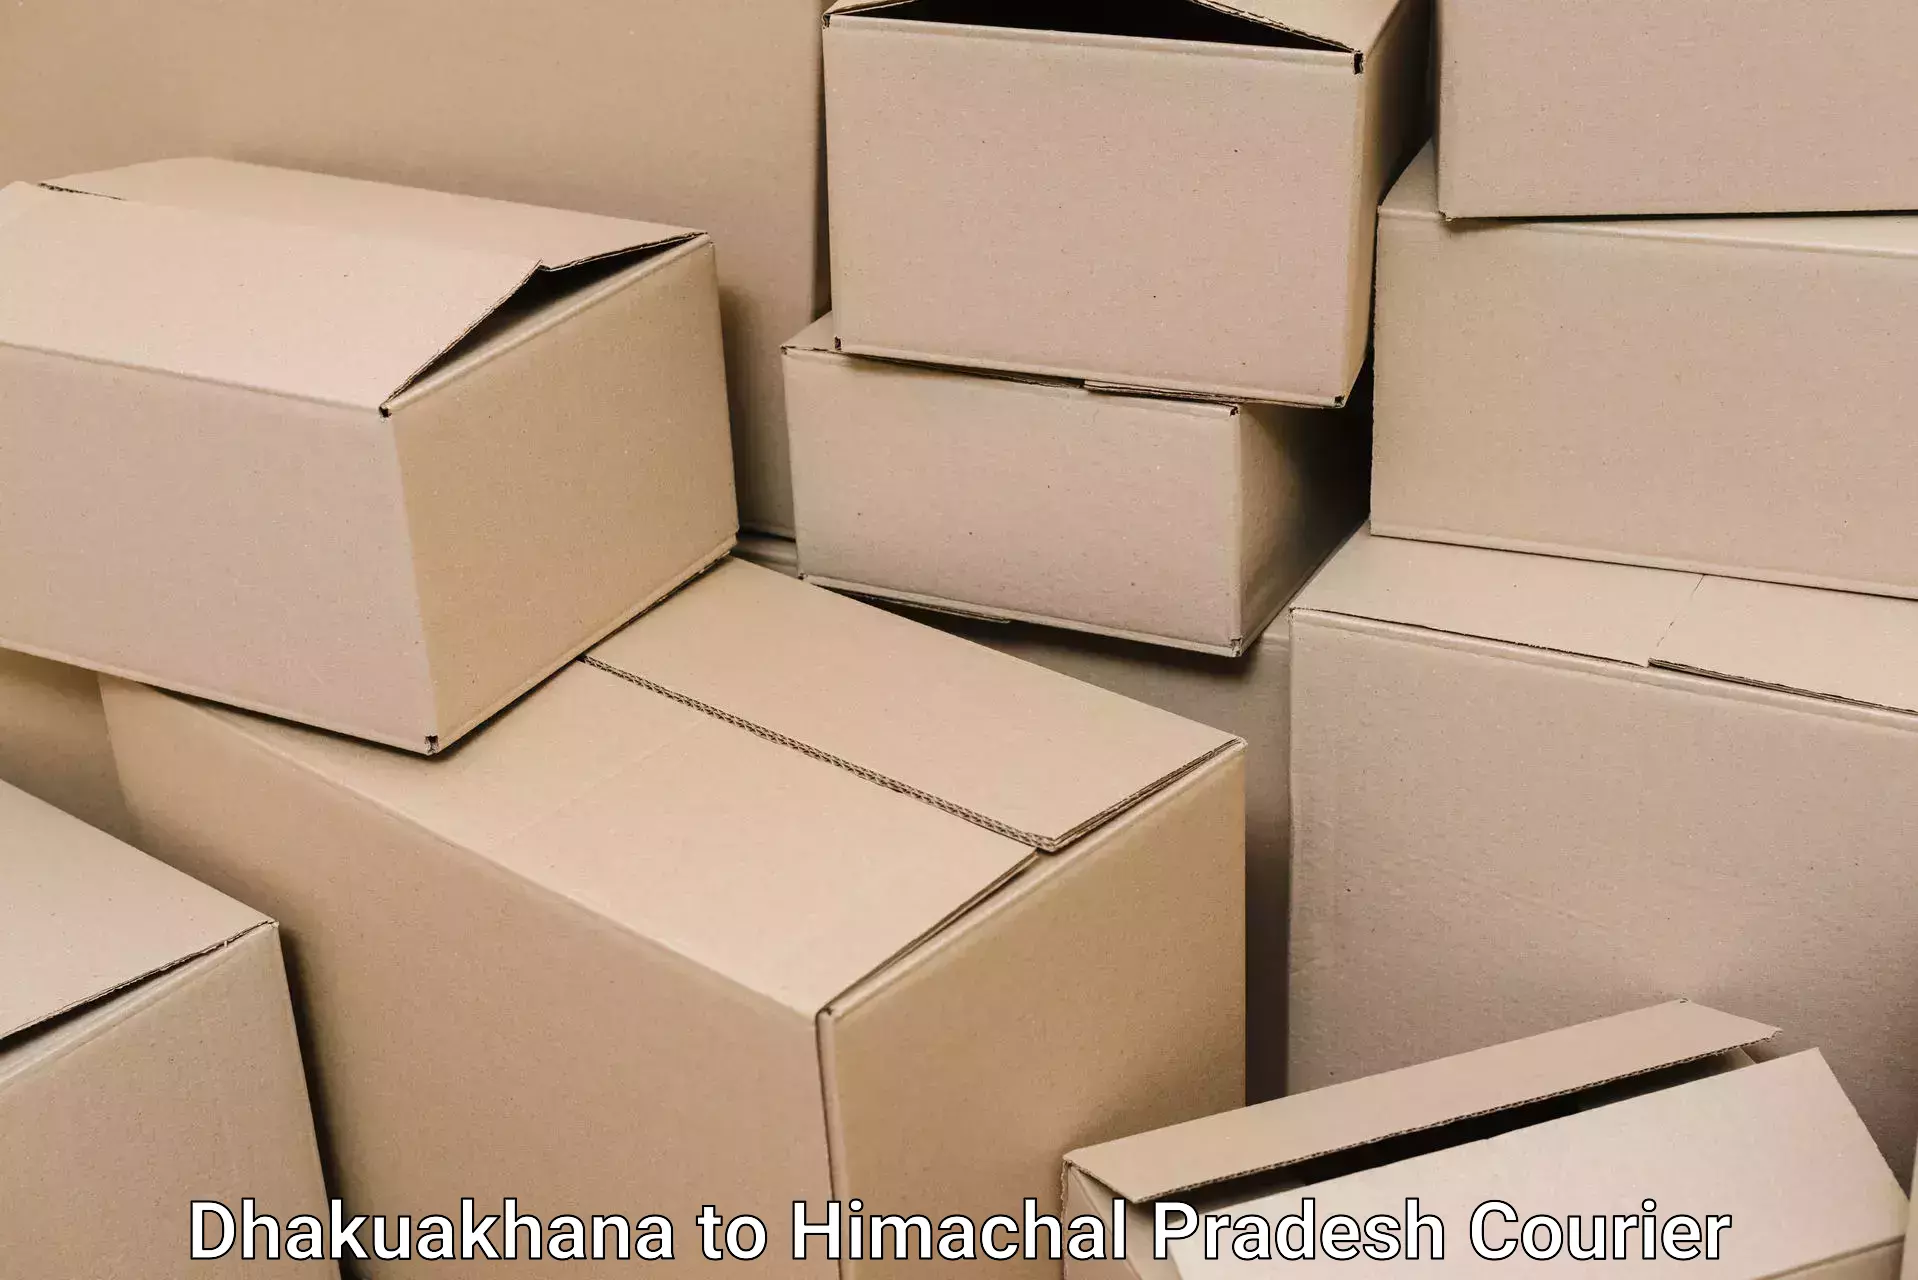 Budget-friendly movers Dhakuakhana to Himachal Pradesh